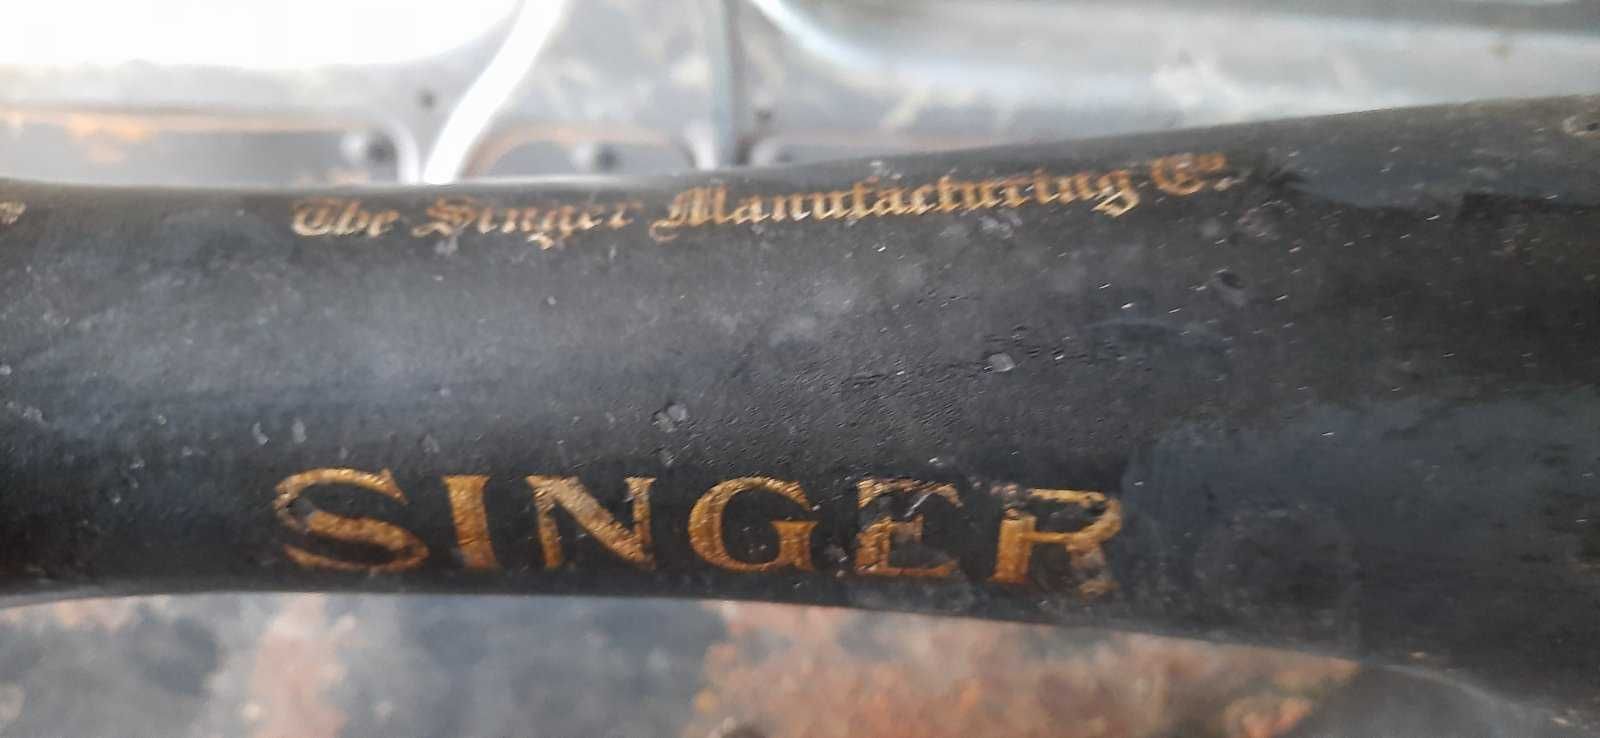 старинная швейная машина Зингер SINGER 16 K 4 со станиной чугун